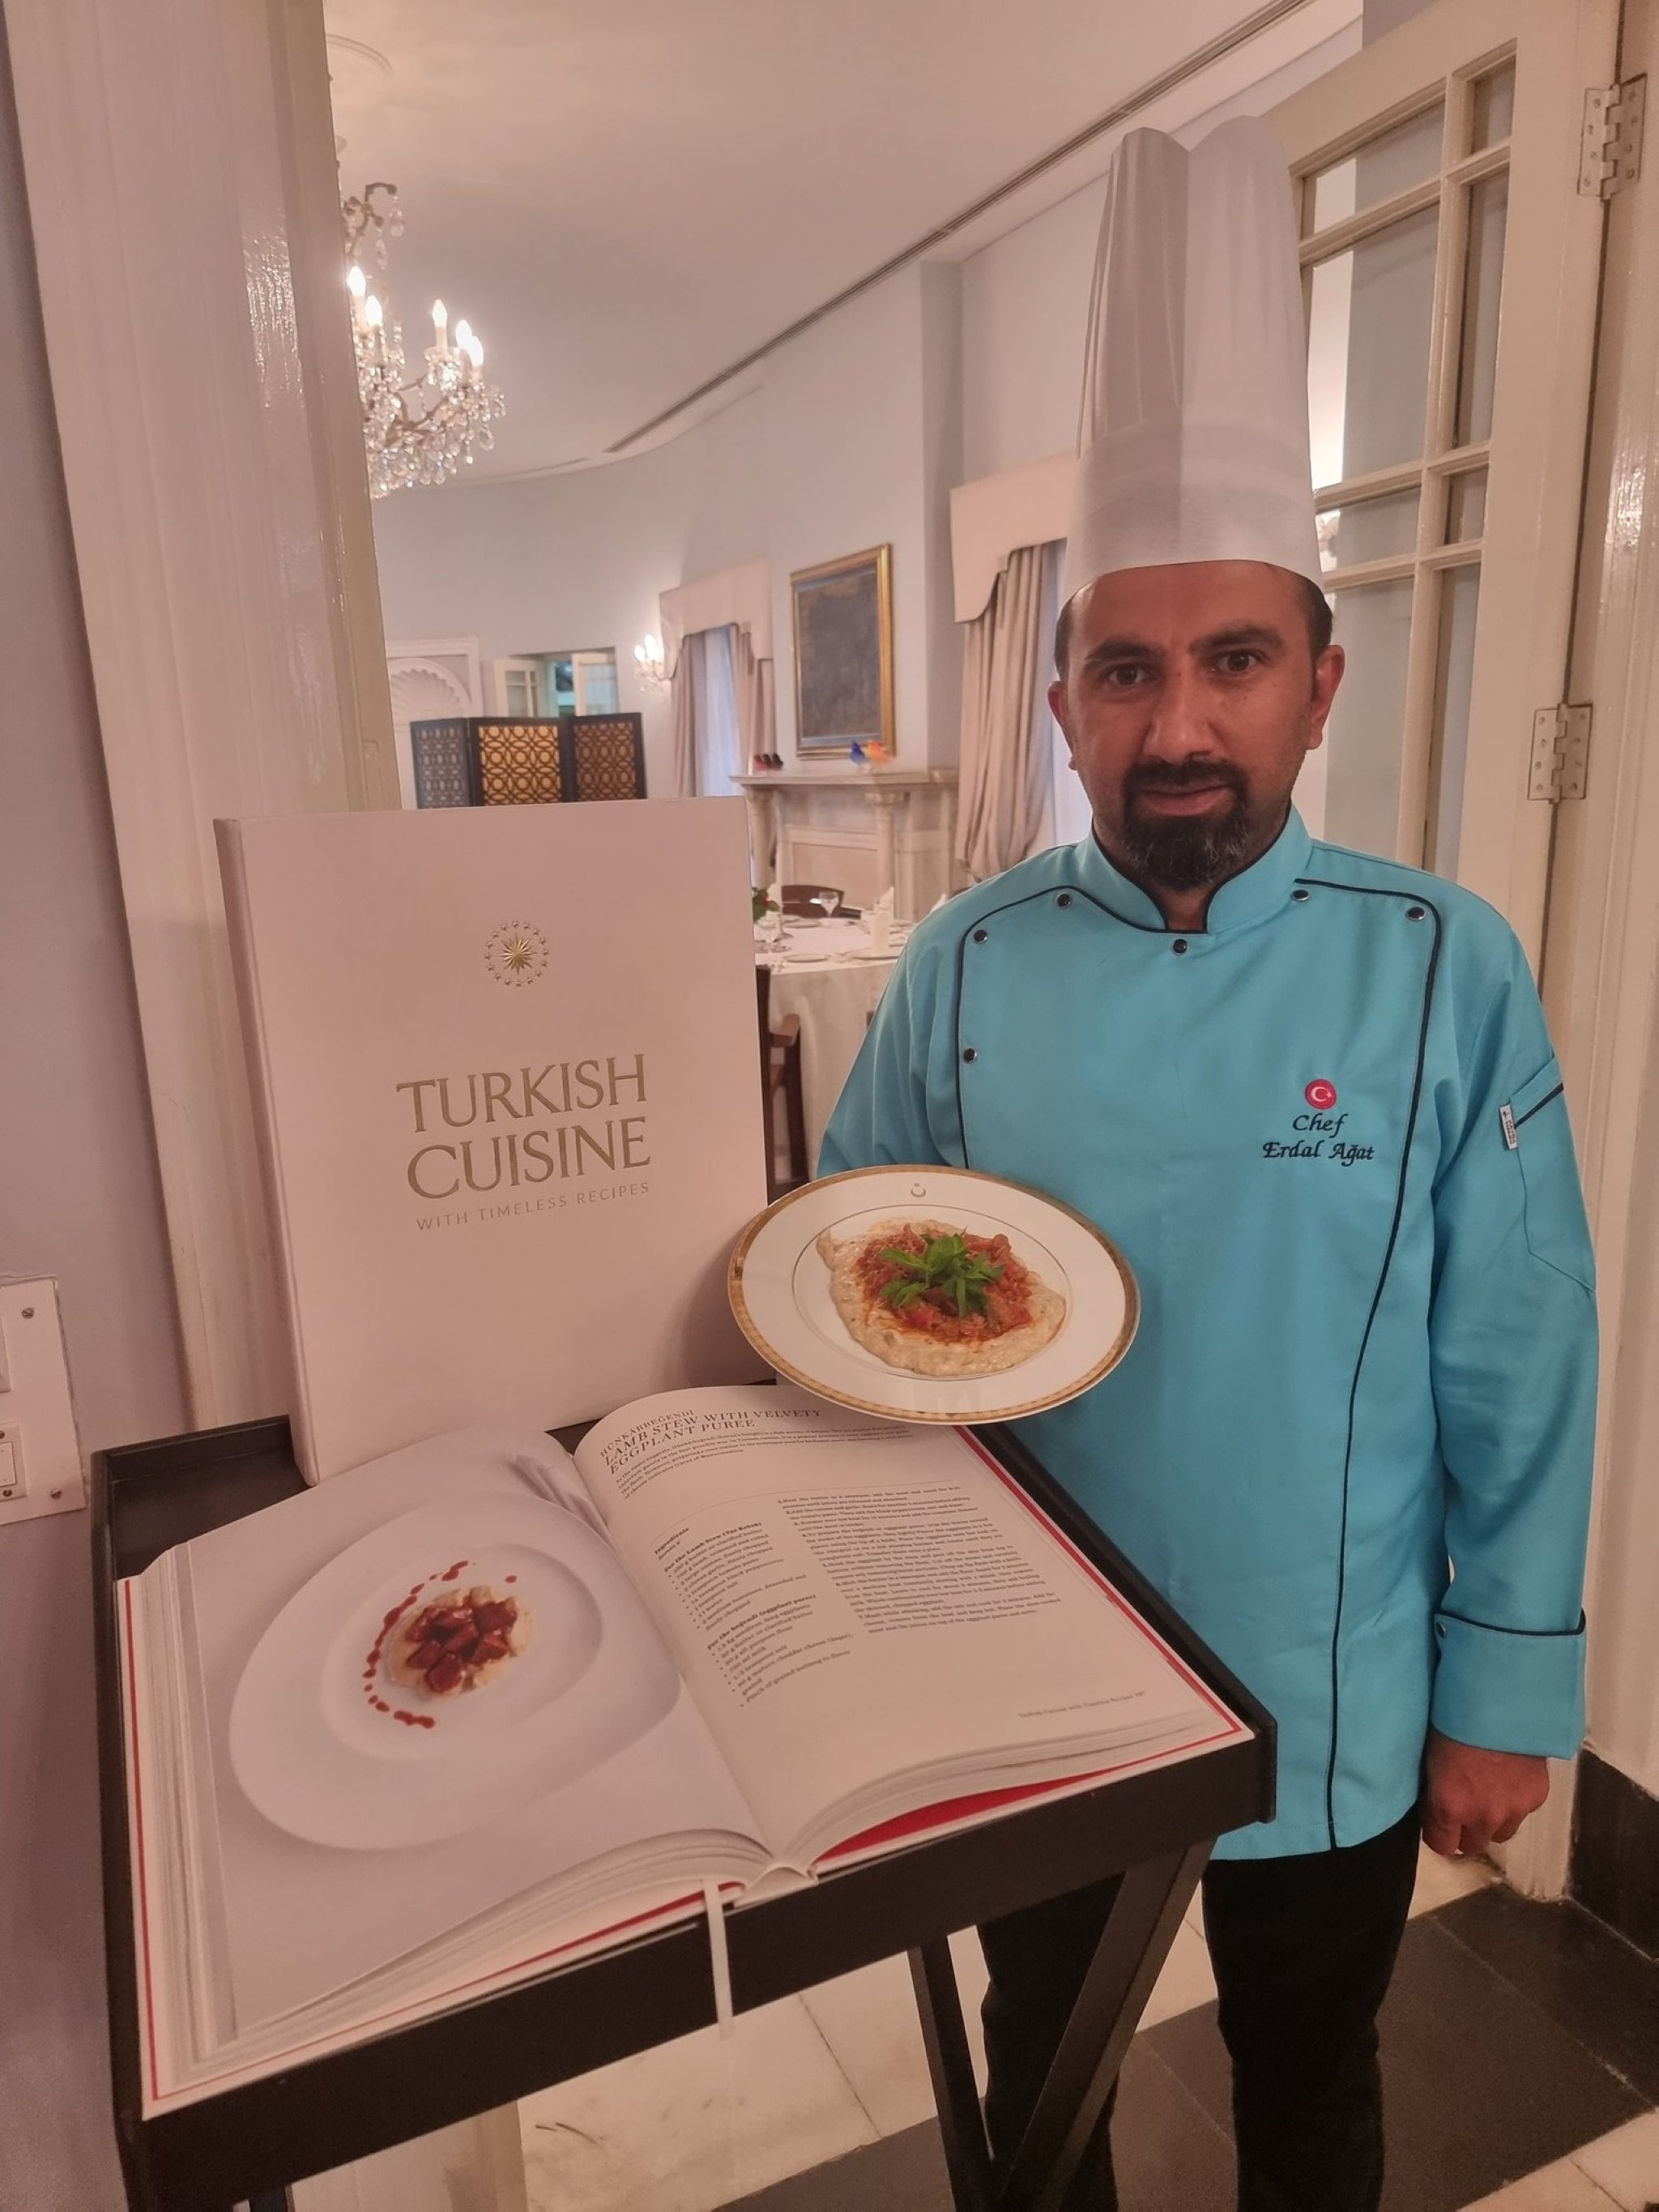 Chef Erdal Ağat berpose dengan hünkar beğendi, atau sup domba dengan pure terong beludru di New Delhi.  (Twitter / Kedutaan Besar Turki di New Delhi)